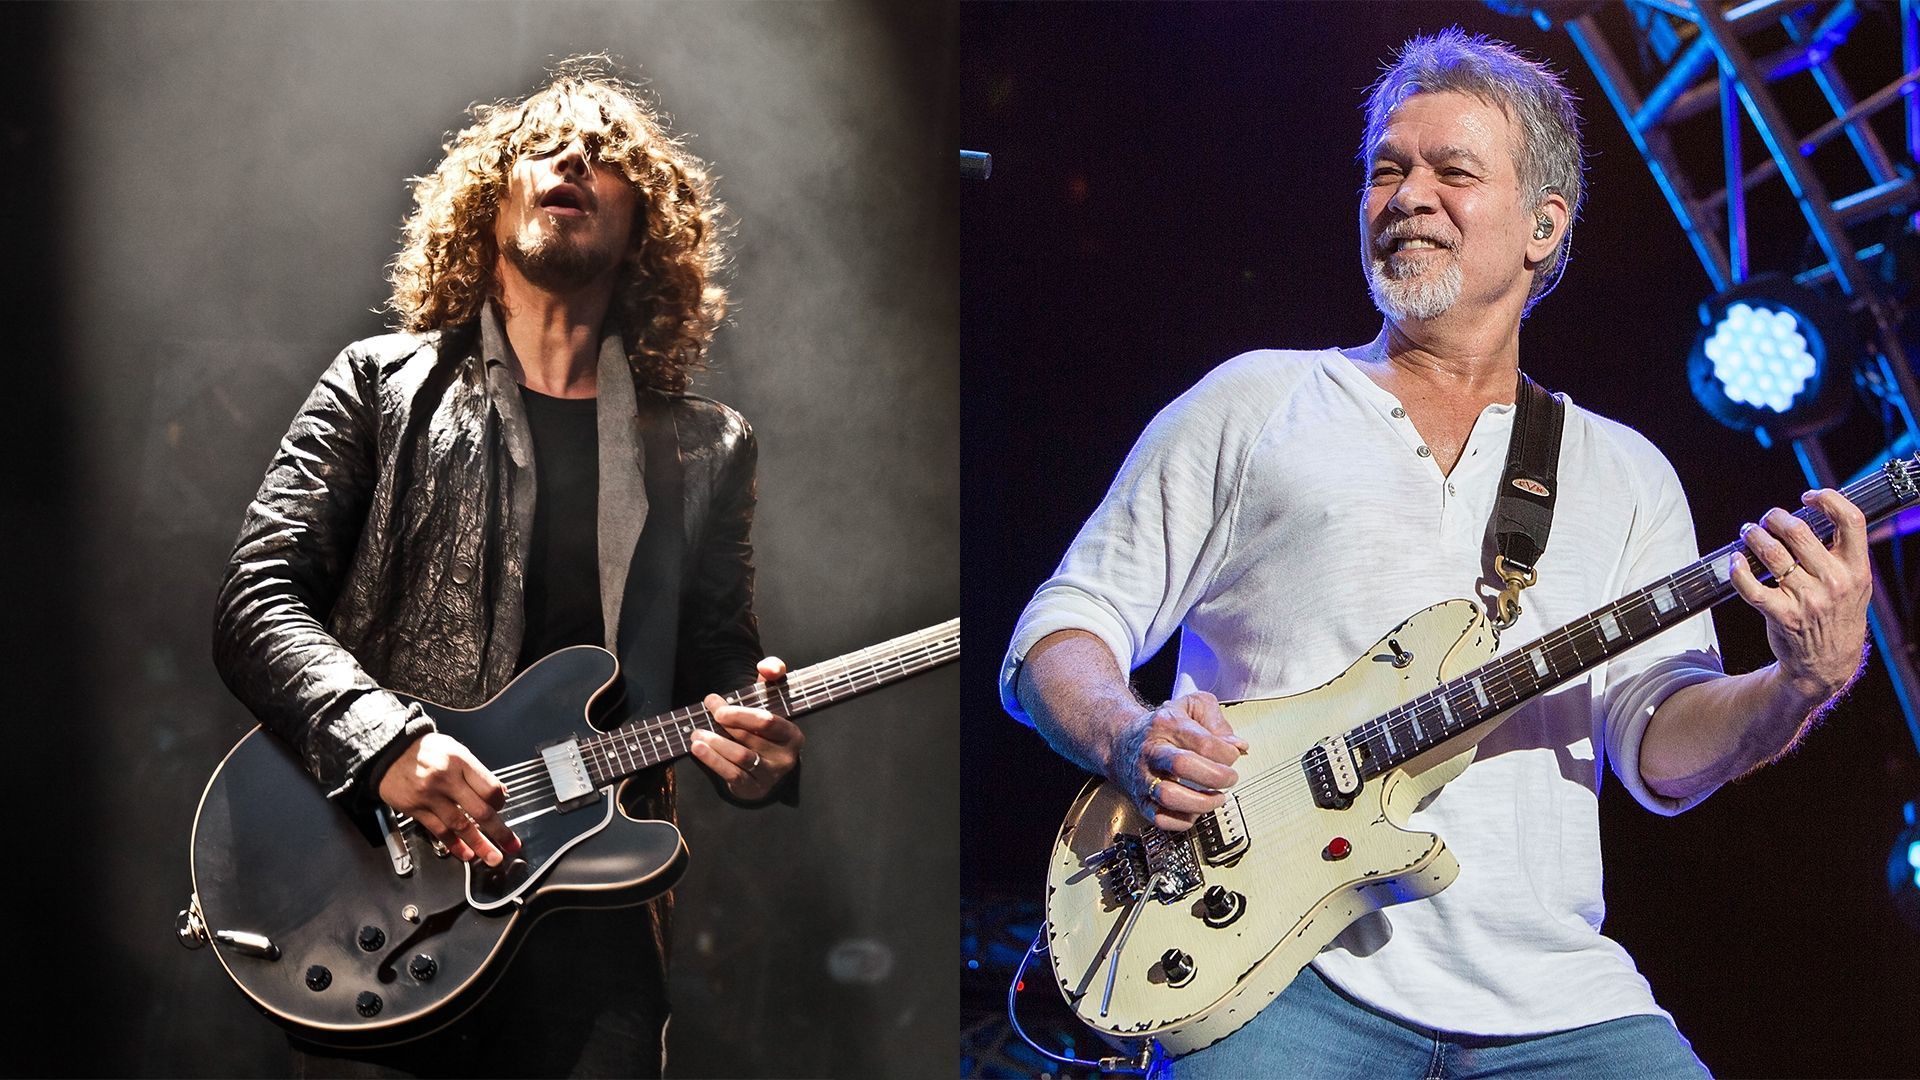 Chris Cornell – Eddie Van Halen